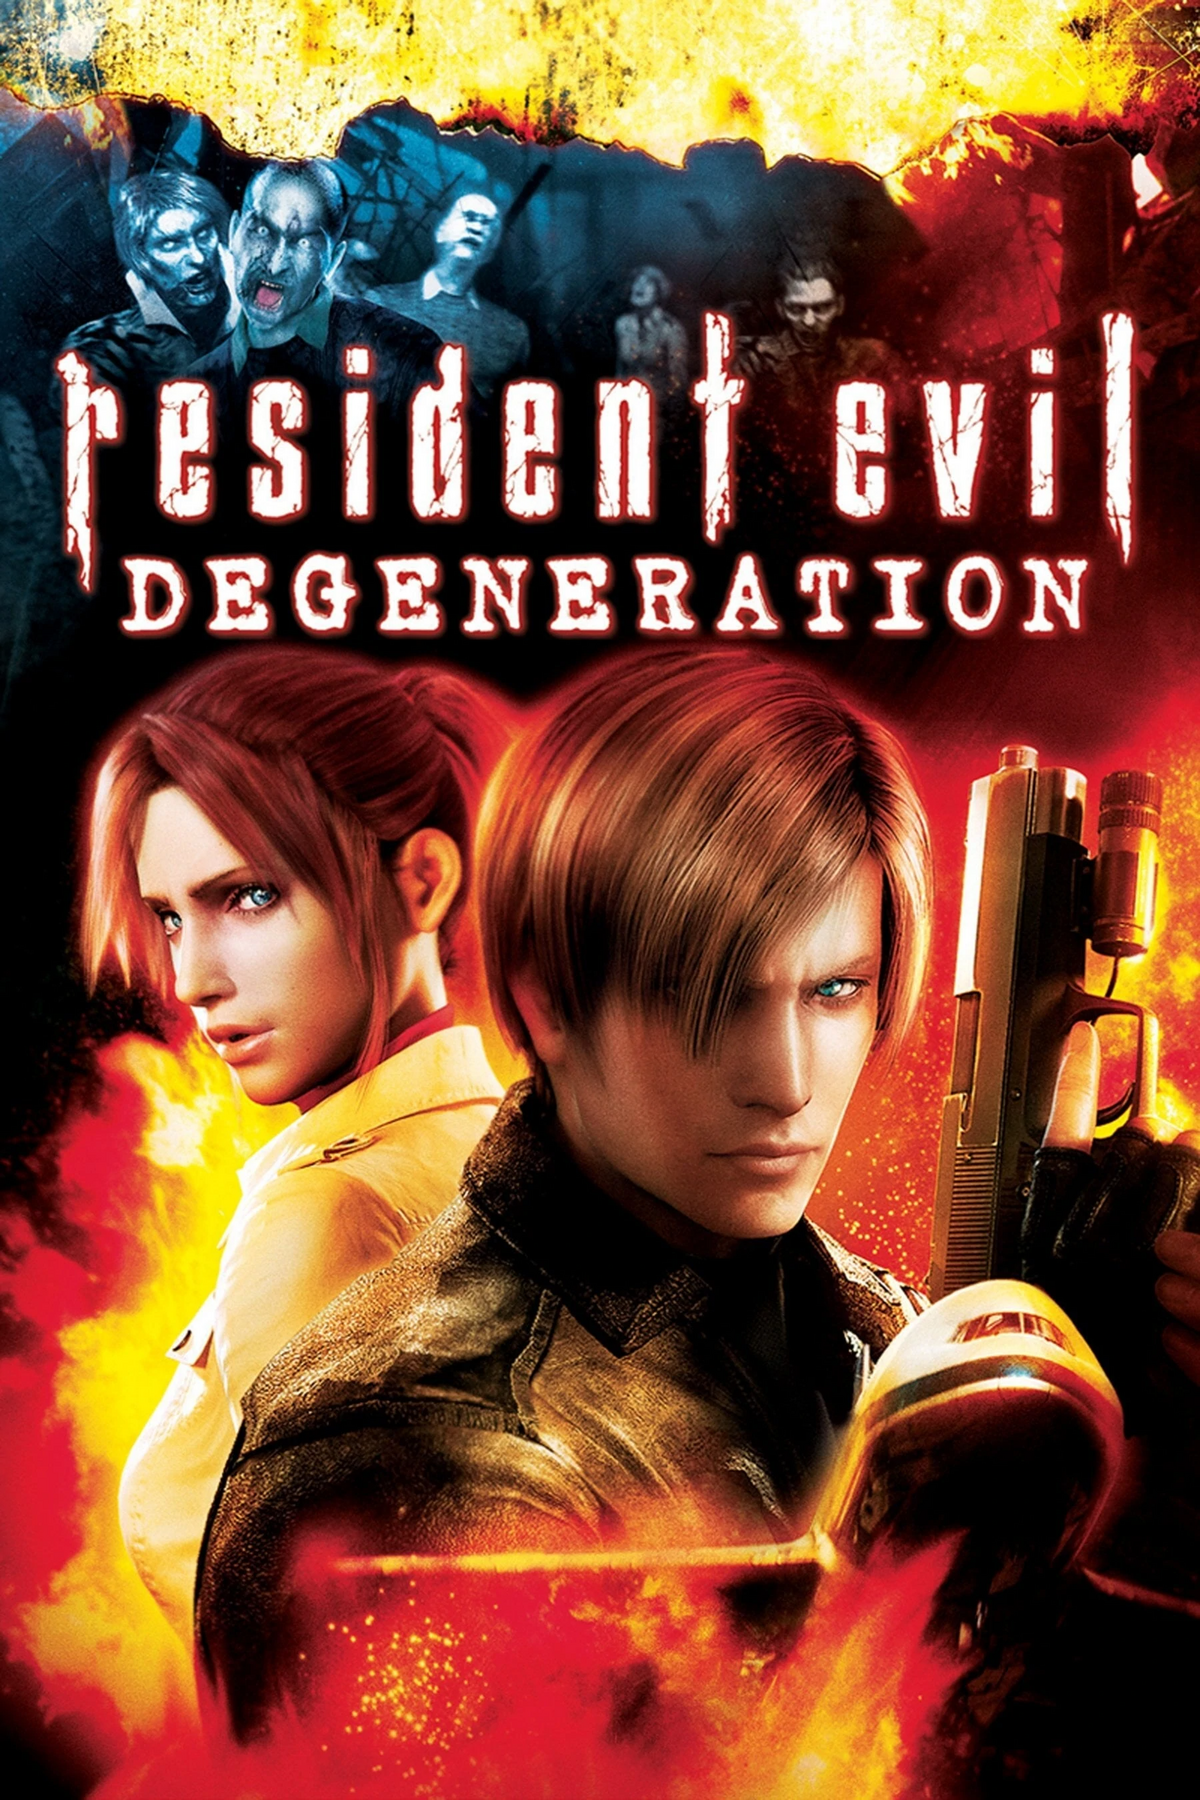 Com dublagem, Resident Evil: Ilha da Morte está disponível nas lojas  digitais